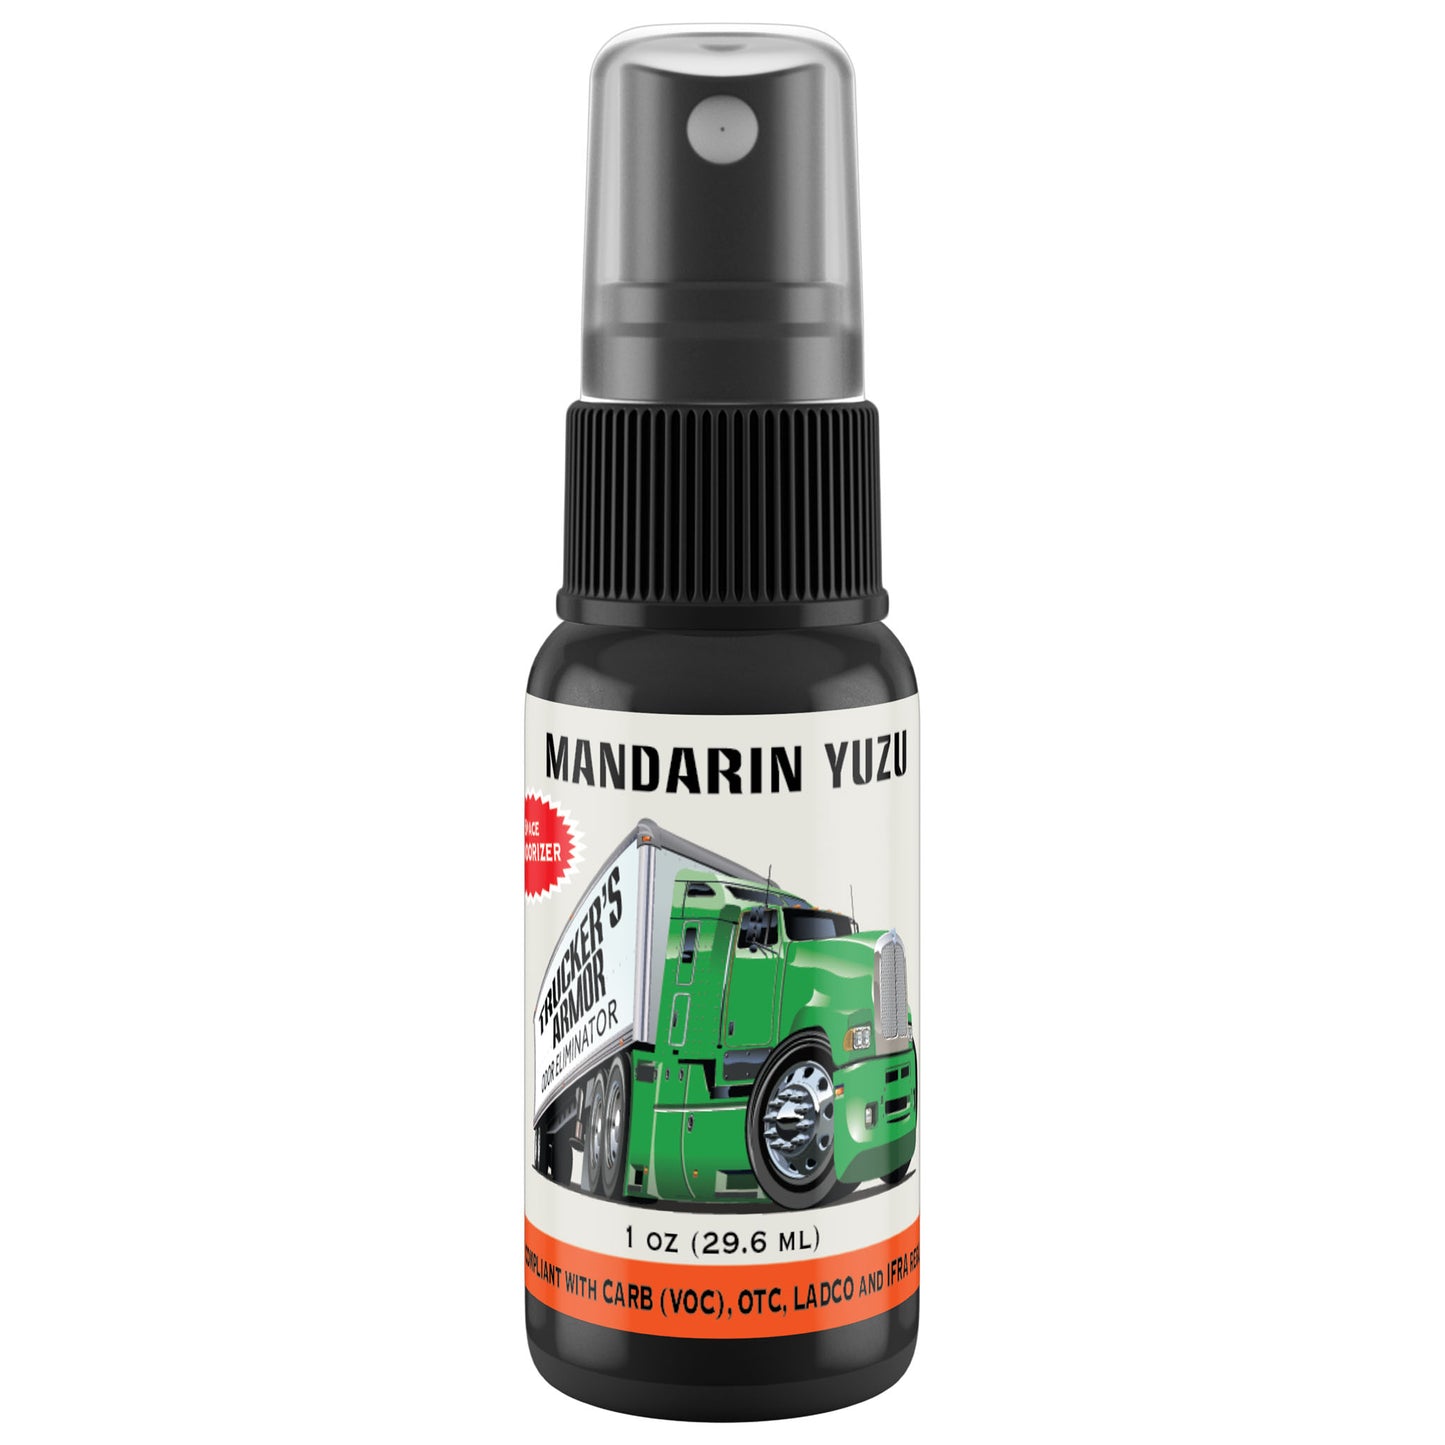 Trucker's Armor Odor Eliminator - Mandarin Yuzu Scent